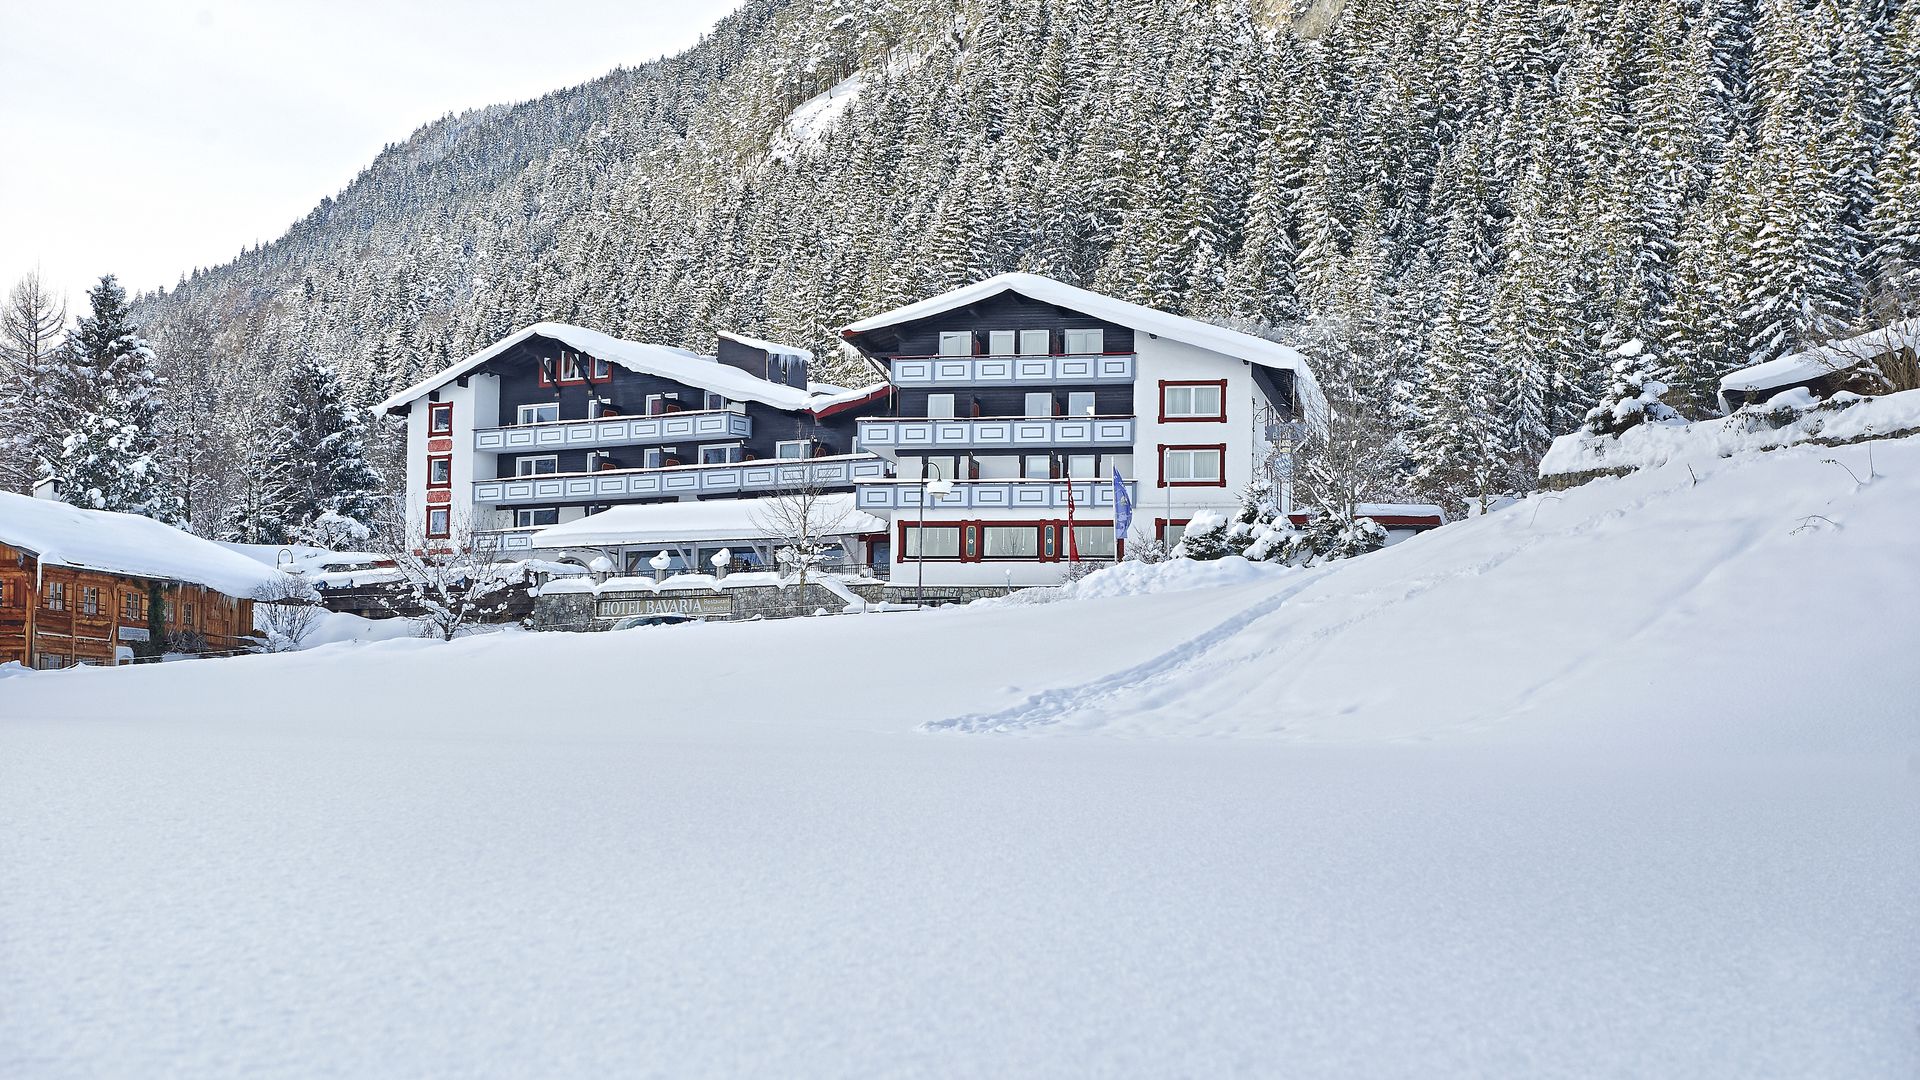 Familotel Bavaria im Winter. Mit tollem Rodelhand am Hotel. Direkteinstieg auf die Loipe. 400m zum Familienskigebiet.